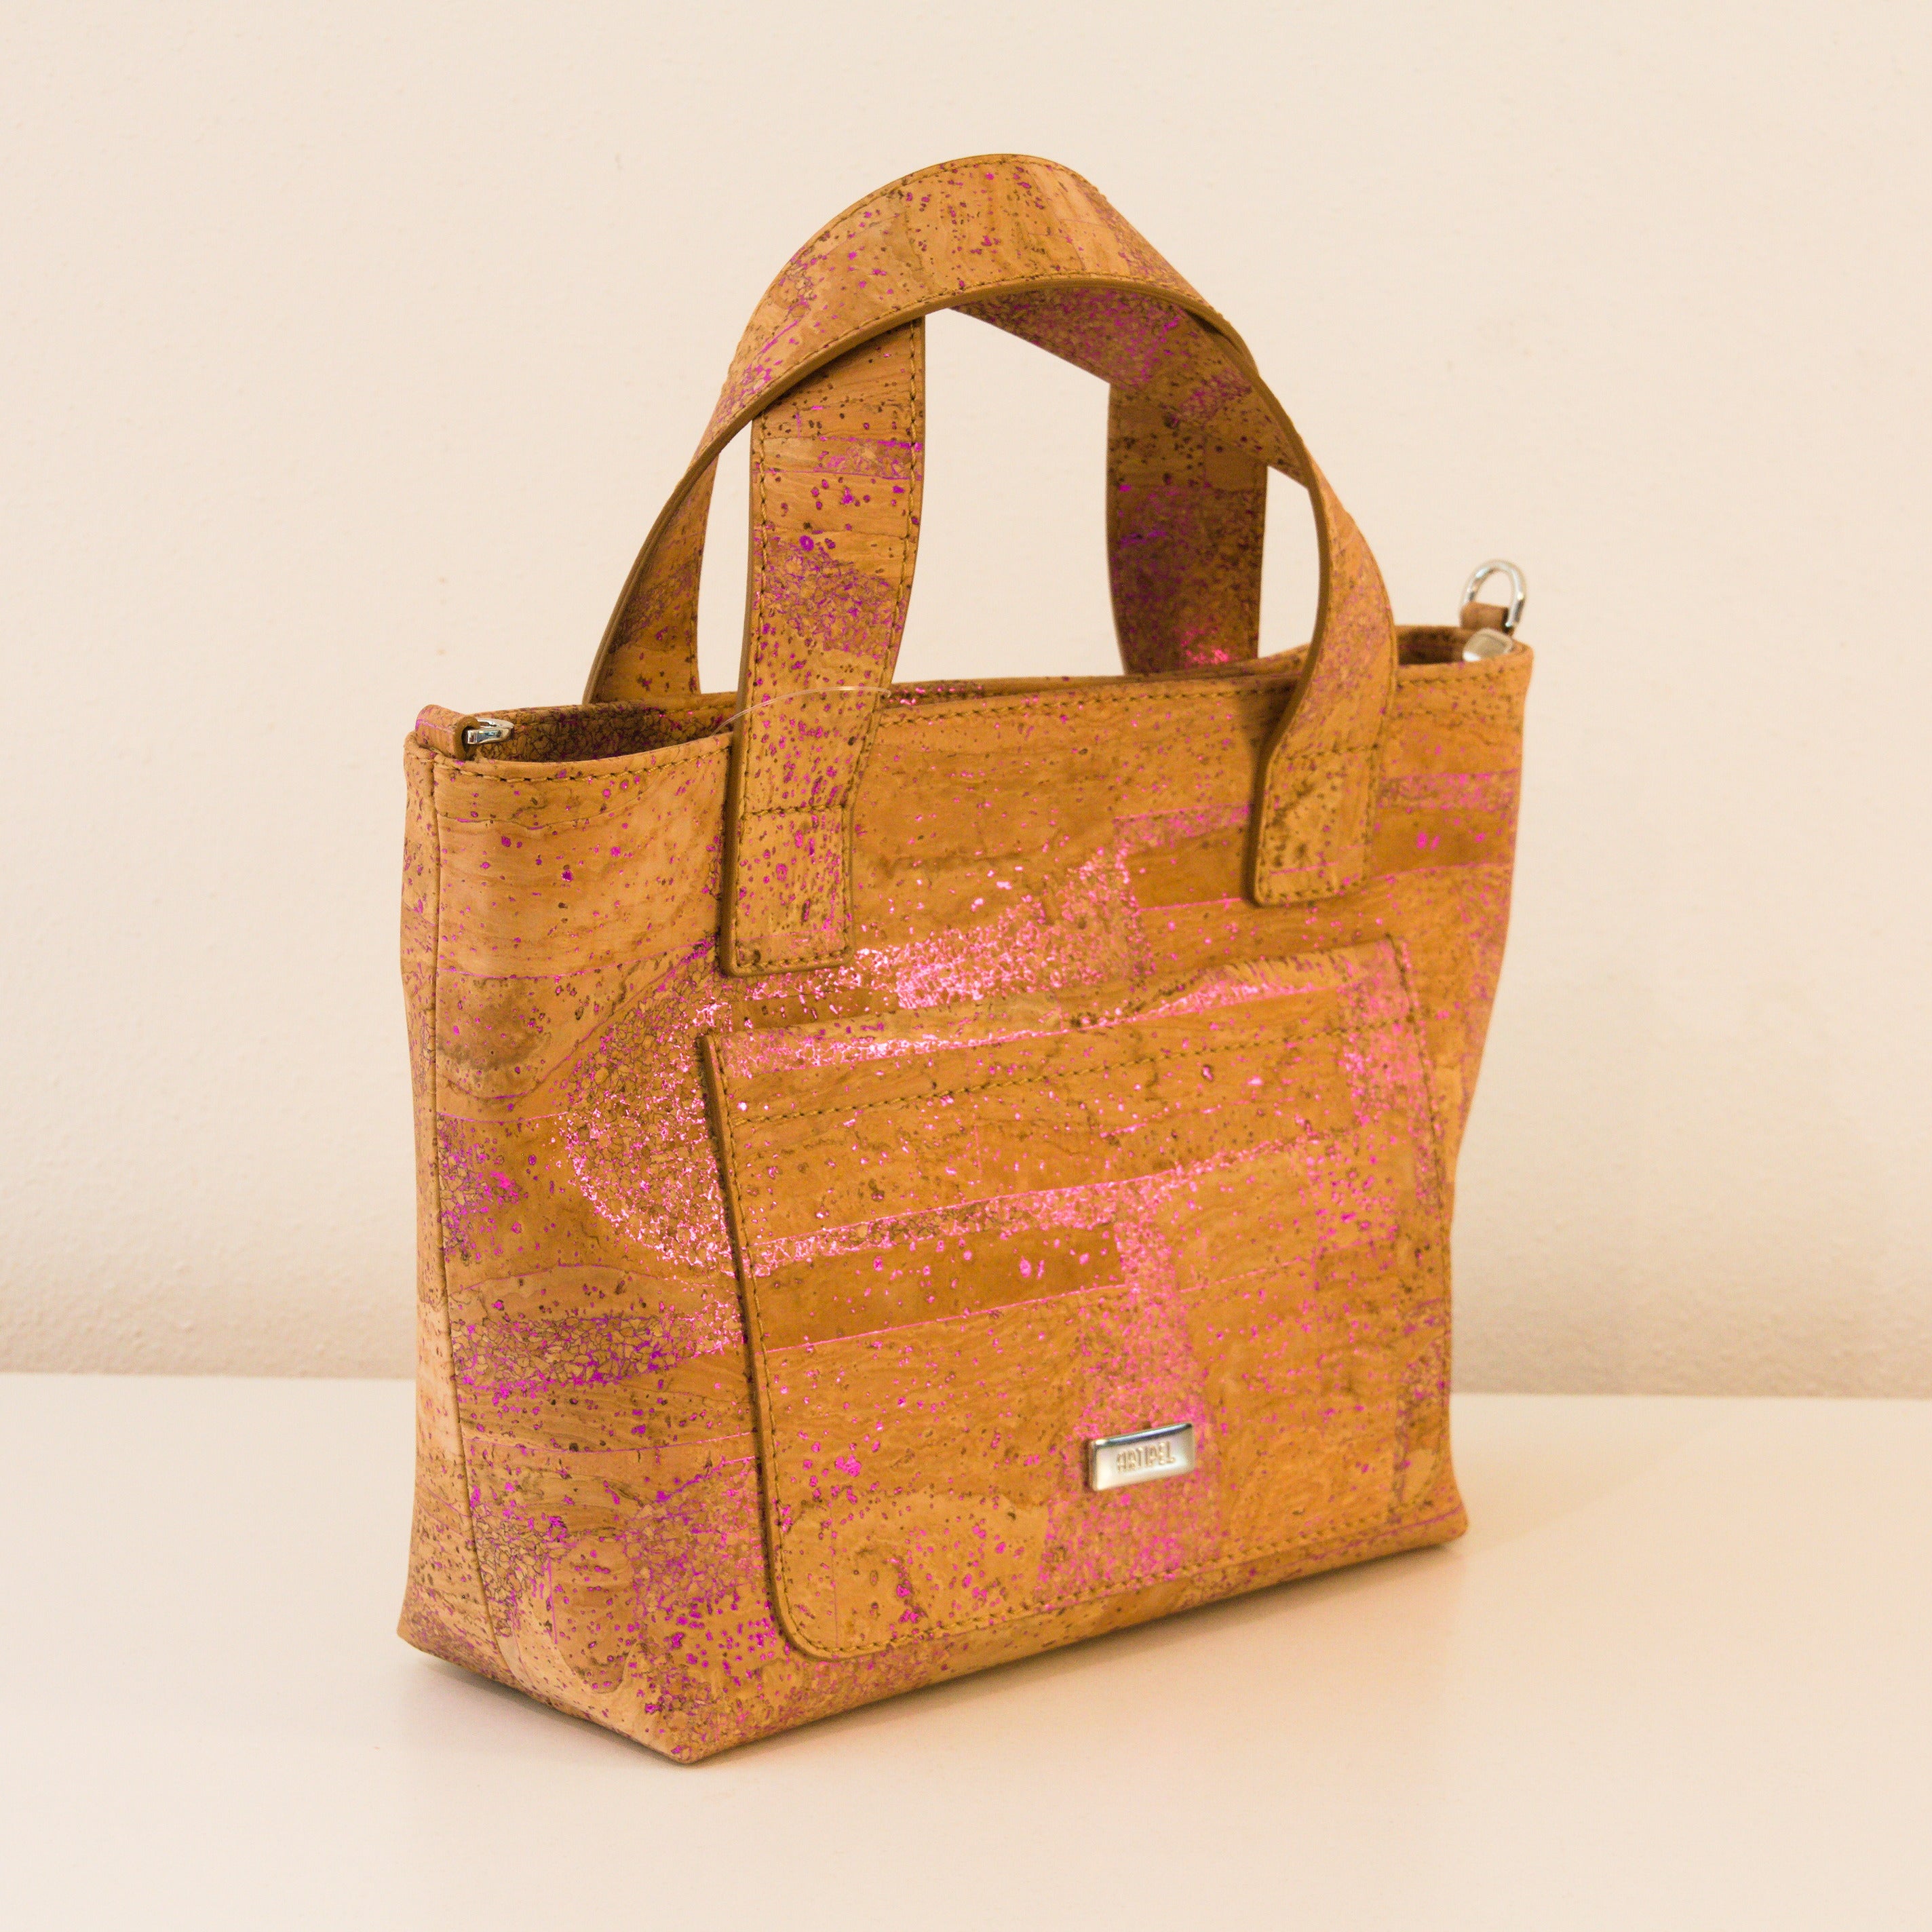 Kork Handtasche * in 2 Größen und 2 Farben * Vegan * Umhängetasche für Frauen * Crossbody * Shopper * handmade in Portugal